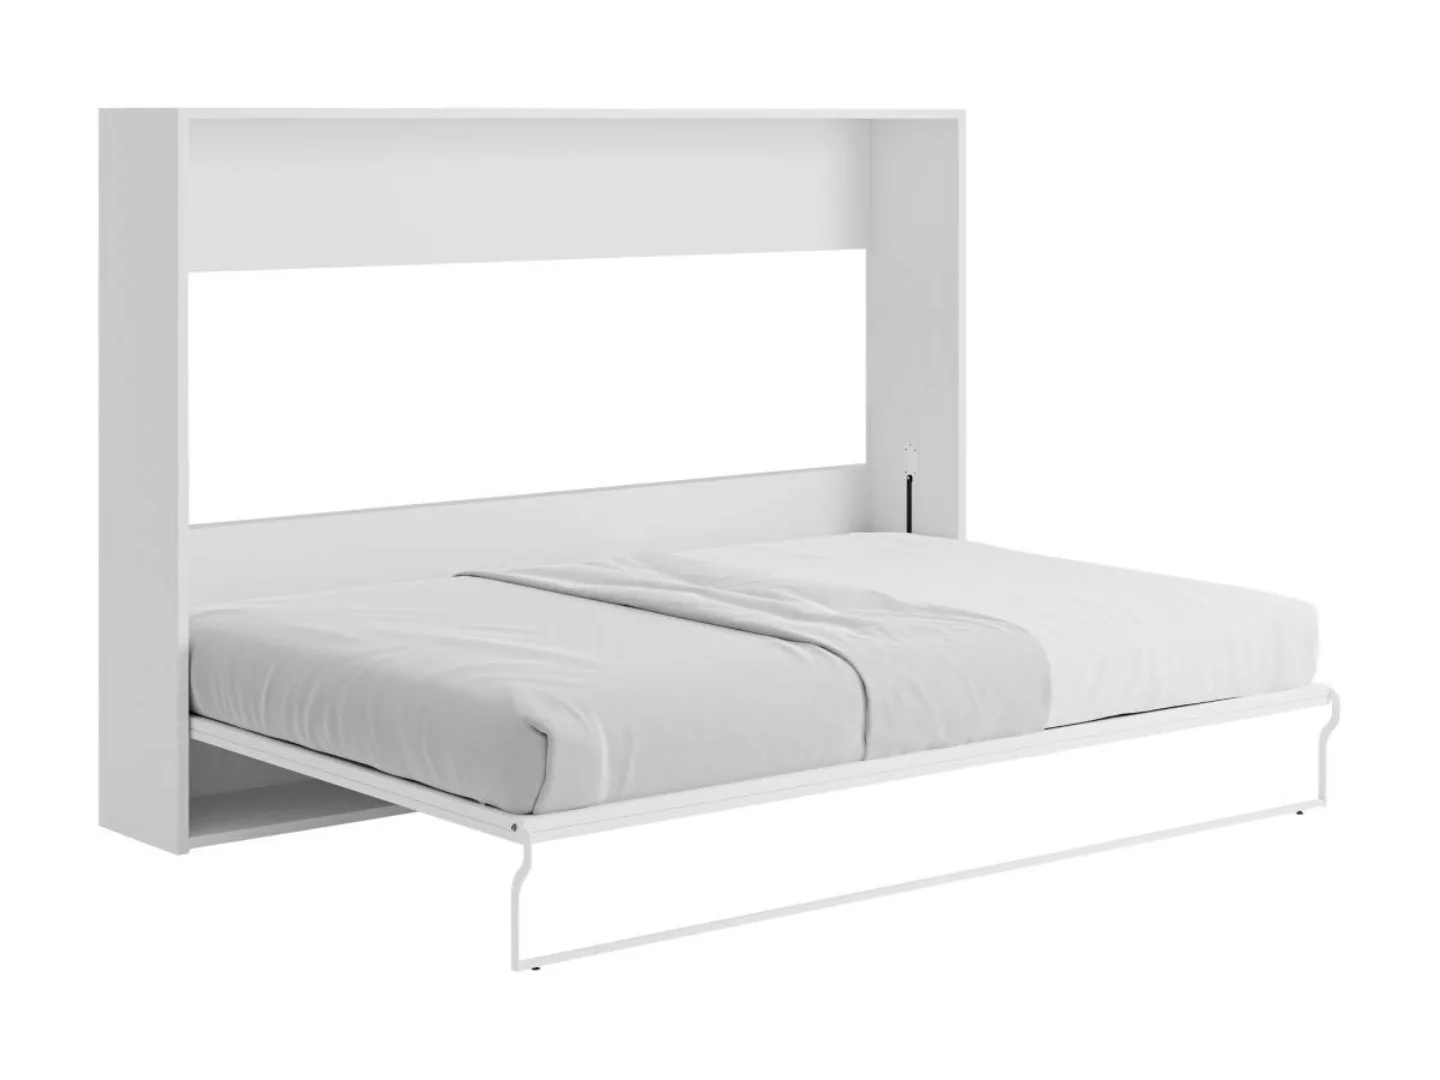 Schrankbett 140 x 200 cm - Manuelle horizontale Öffnung - Weiß und Grau - M günstig online kaufen